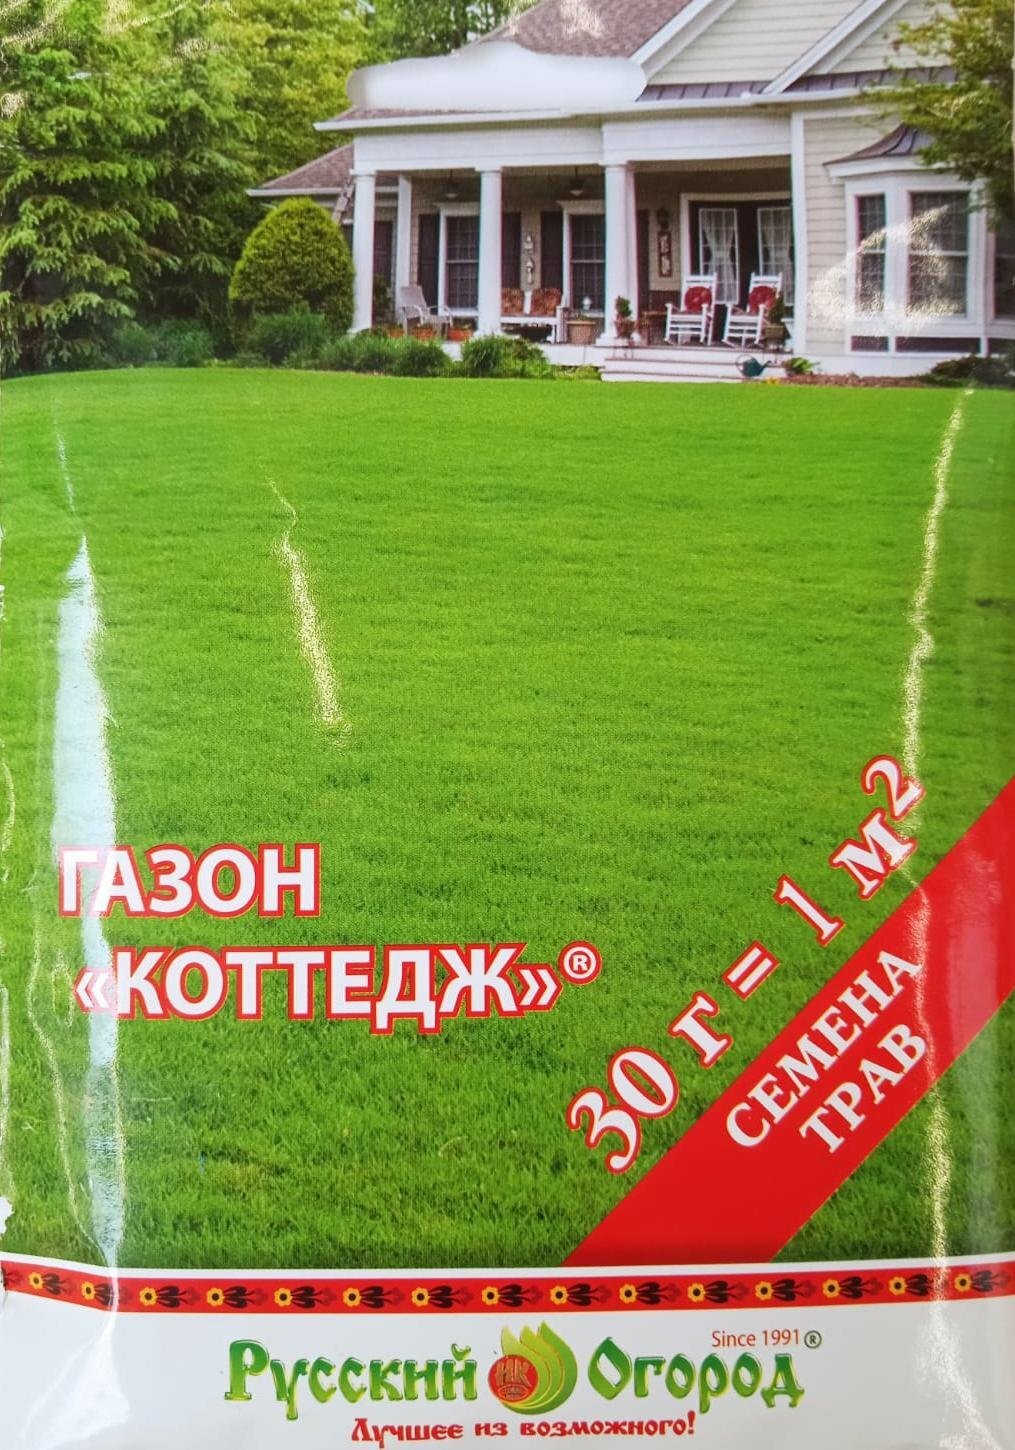 Семена газона Русский огород Коттедж 30г